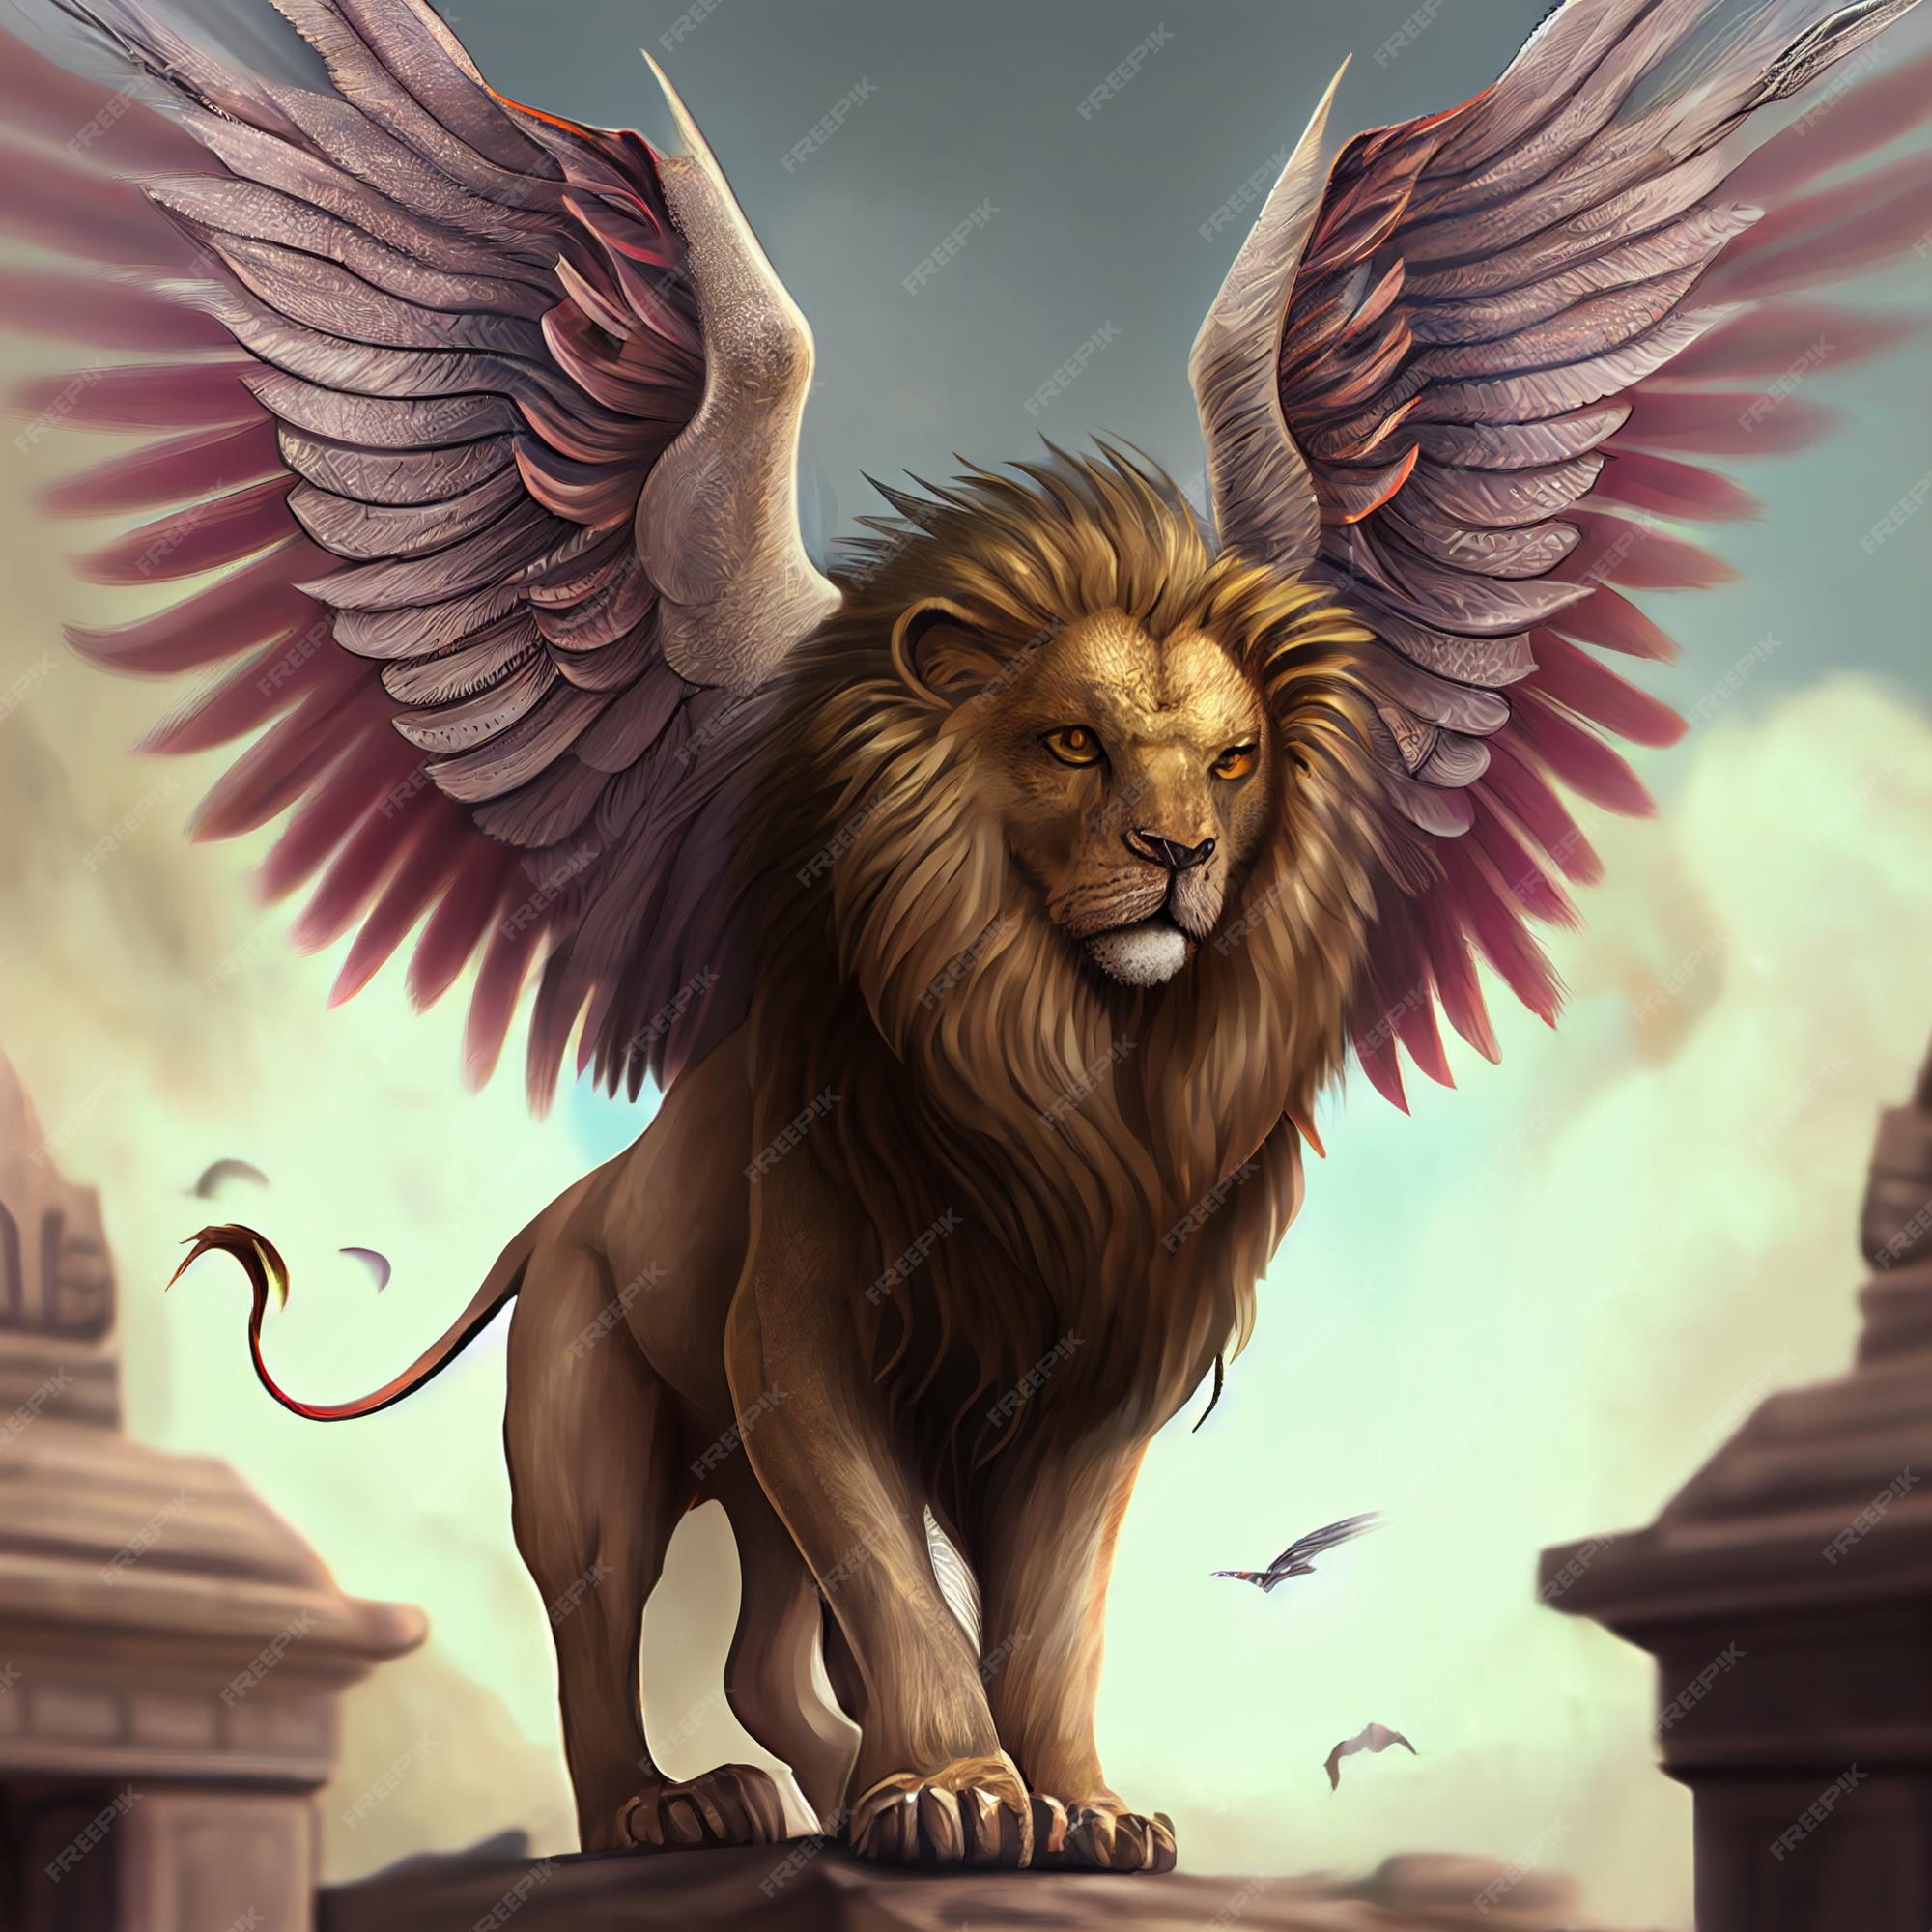 León alado majestuoso león con alas ilustración | Foto Premium